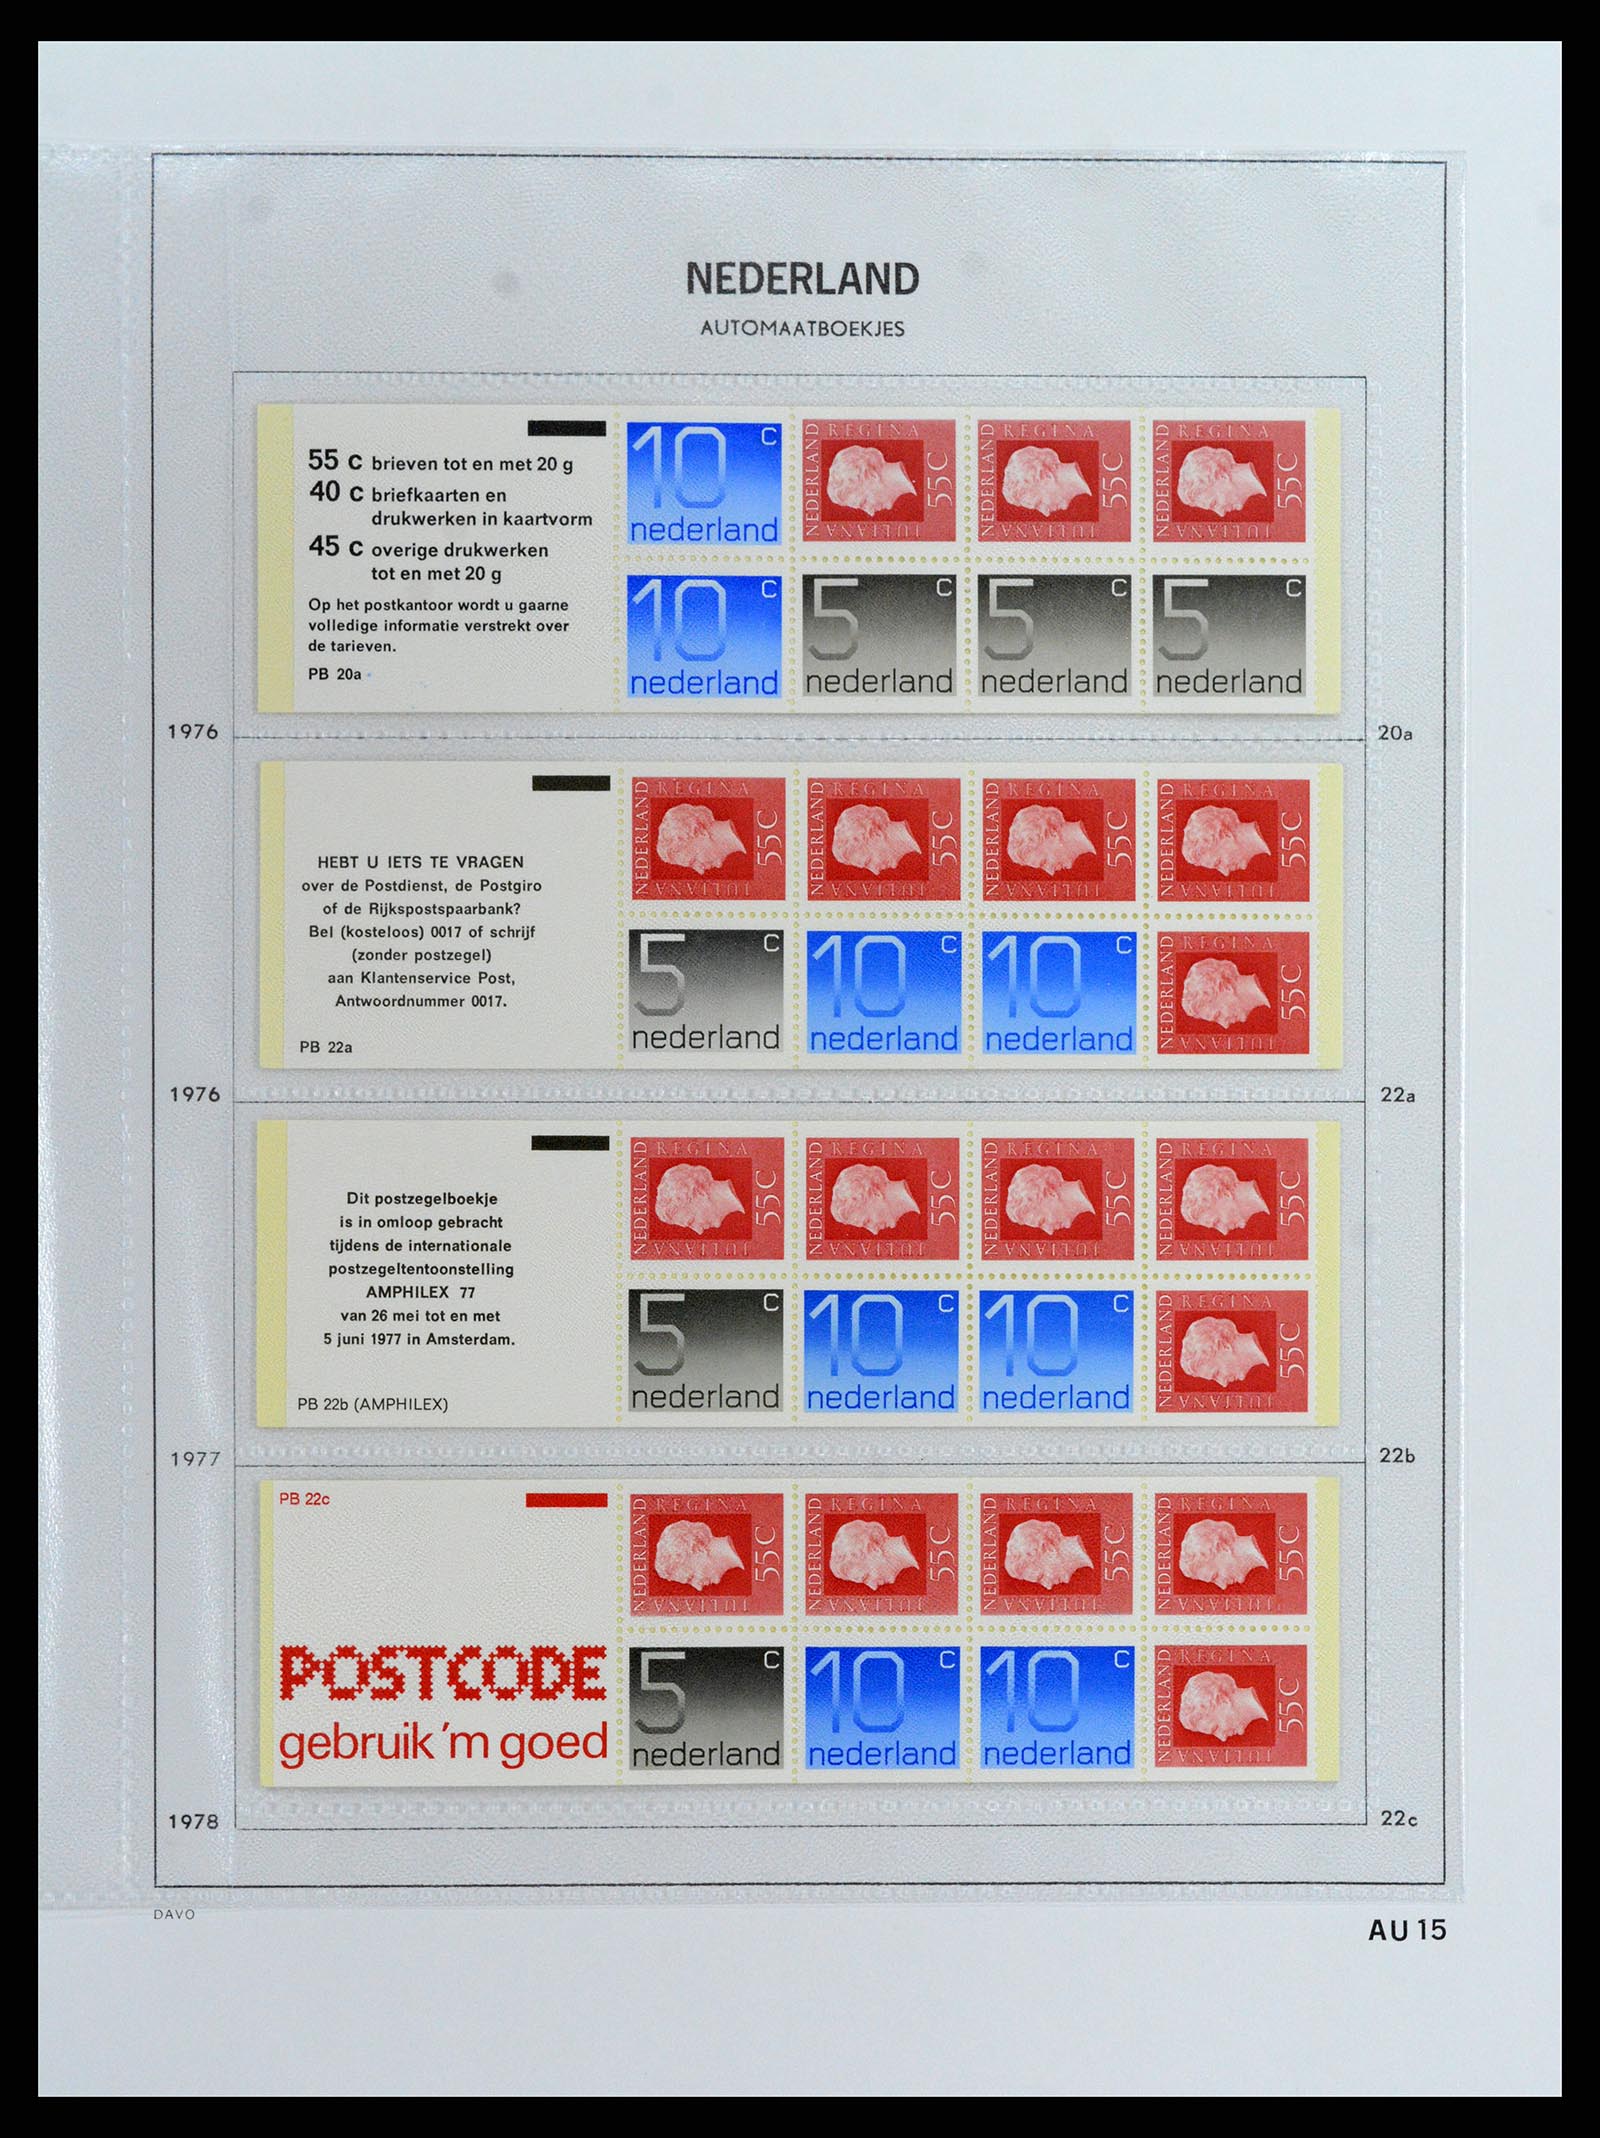 37871 015 - Stamp Collection 37871 Netherlands stampbooklets 1964-2000.